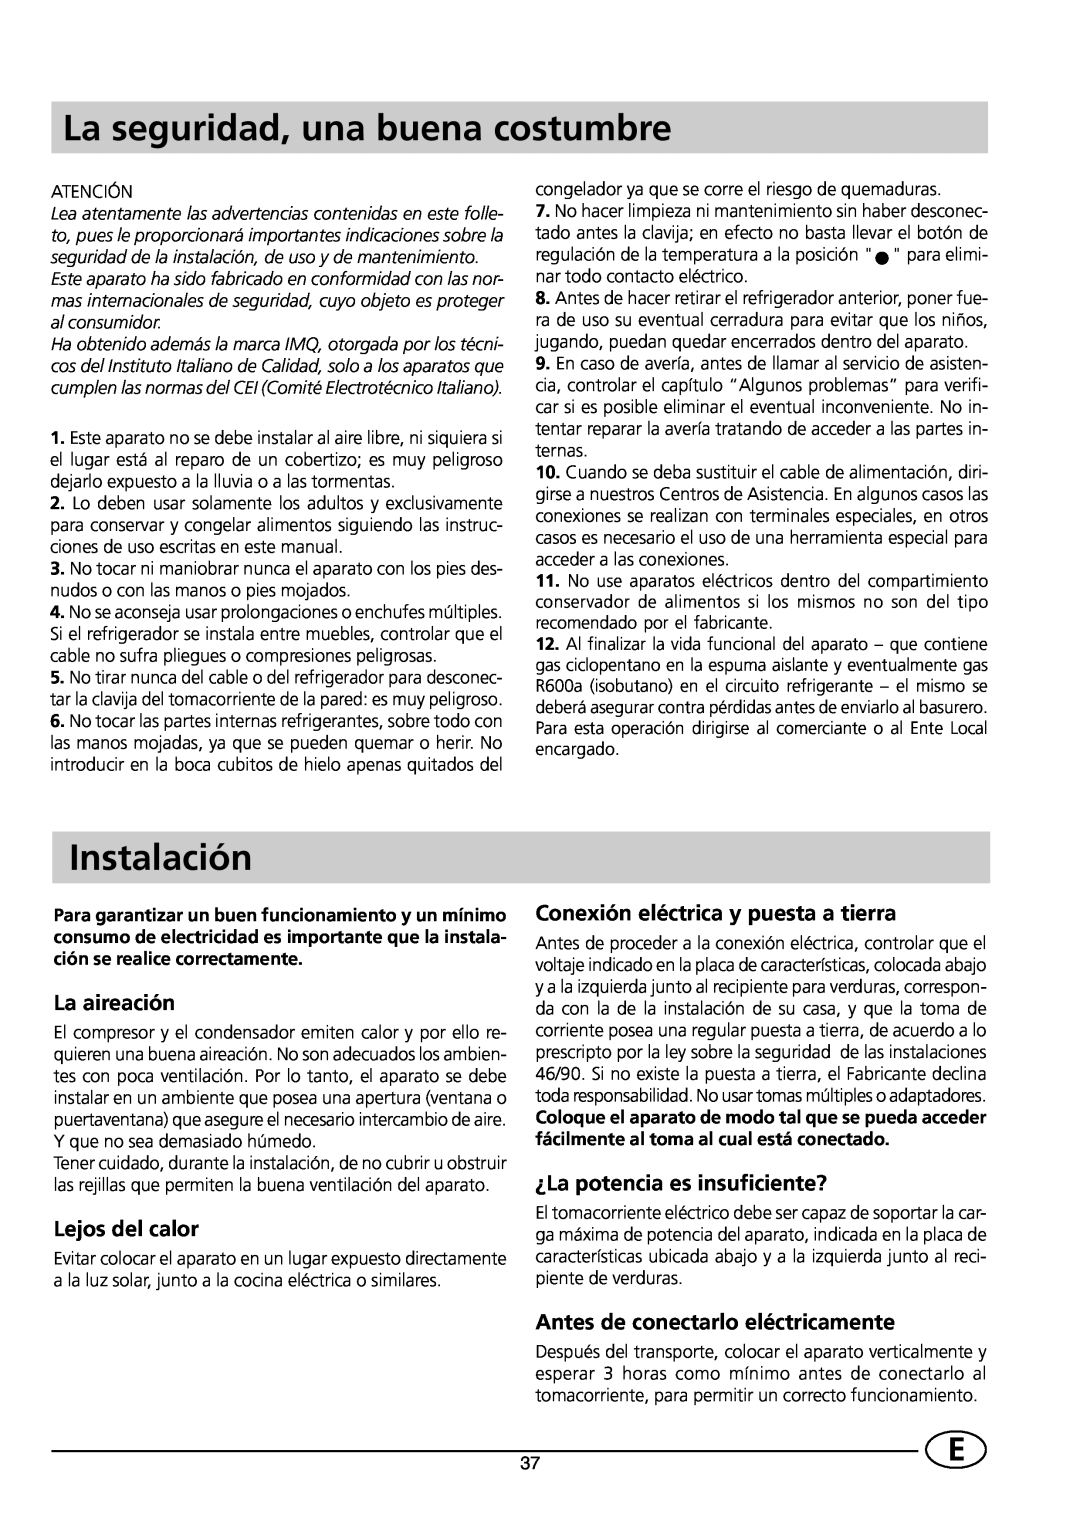 Indesit CG 3100 manual La seguridad, una buena costumbre, Instalación, La aireación, Lejos del calor 